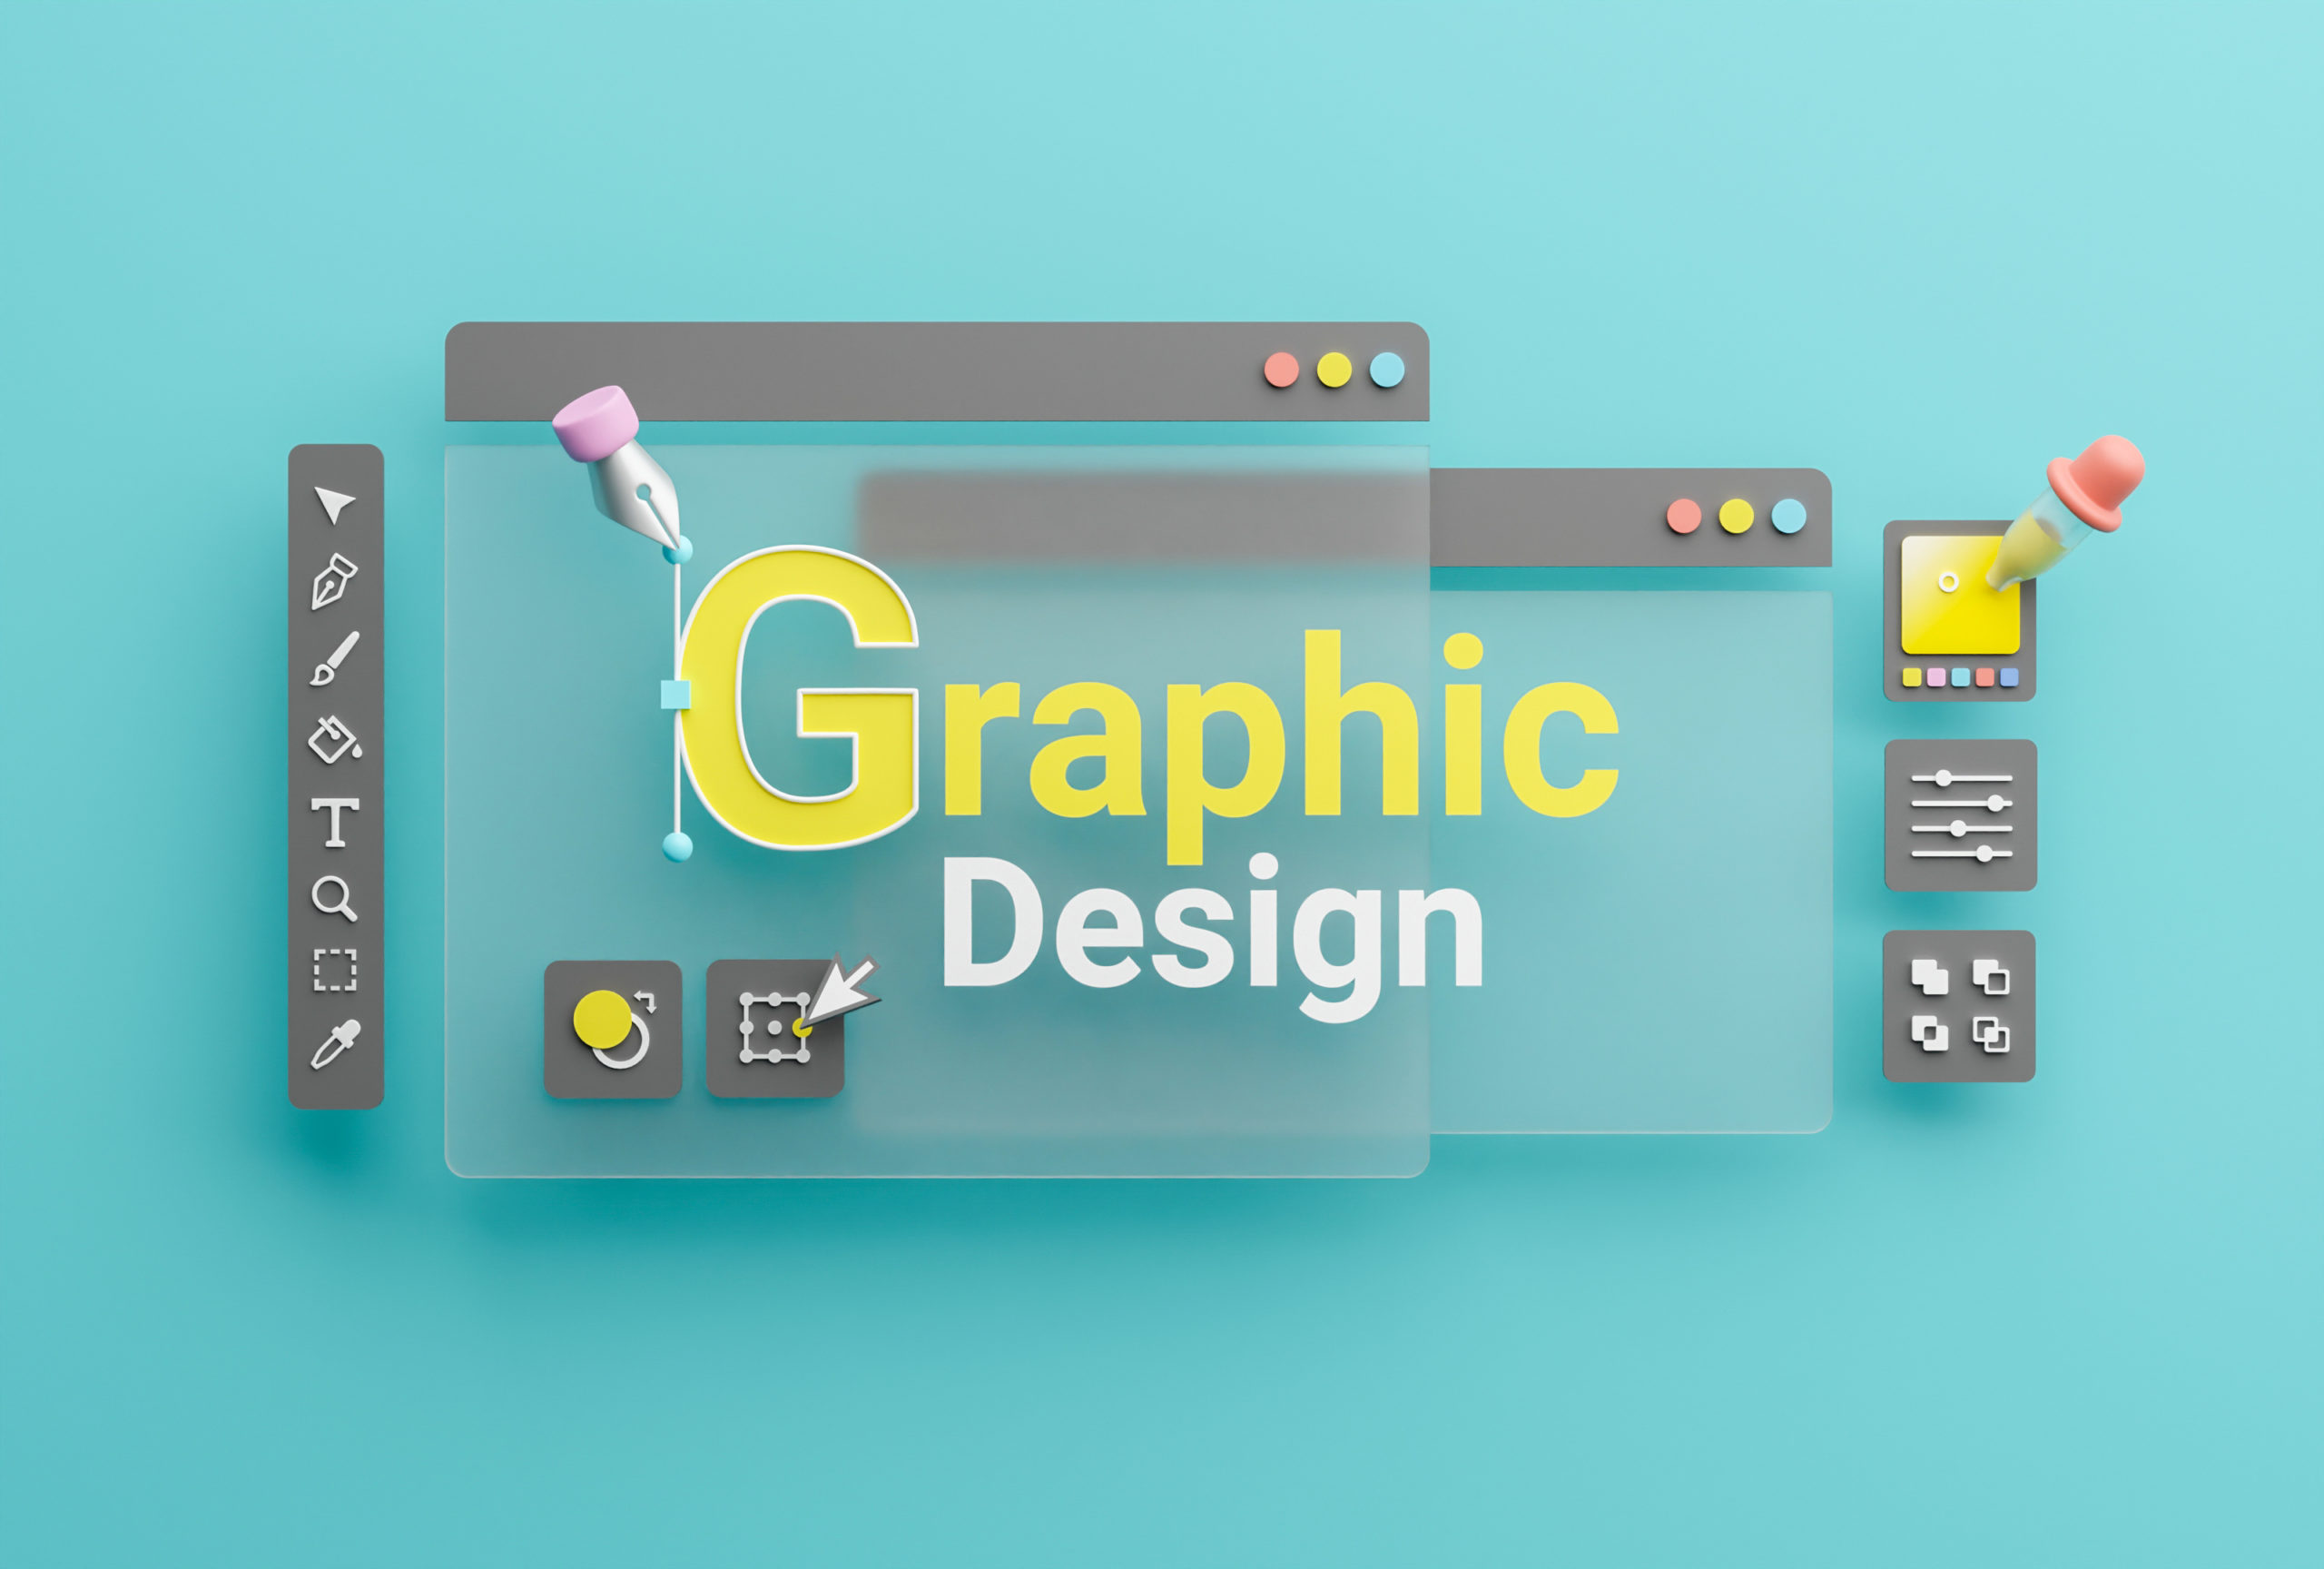 Image representing graphic design